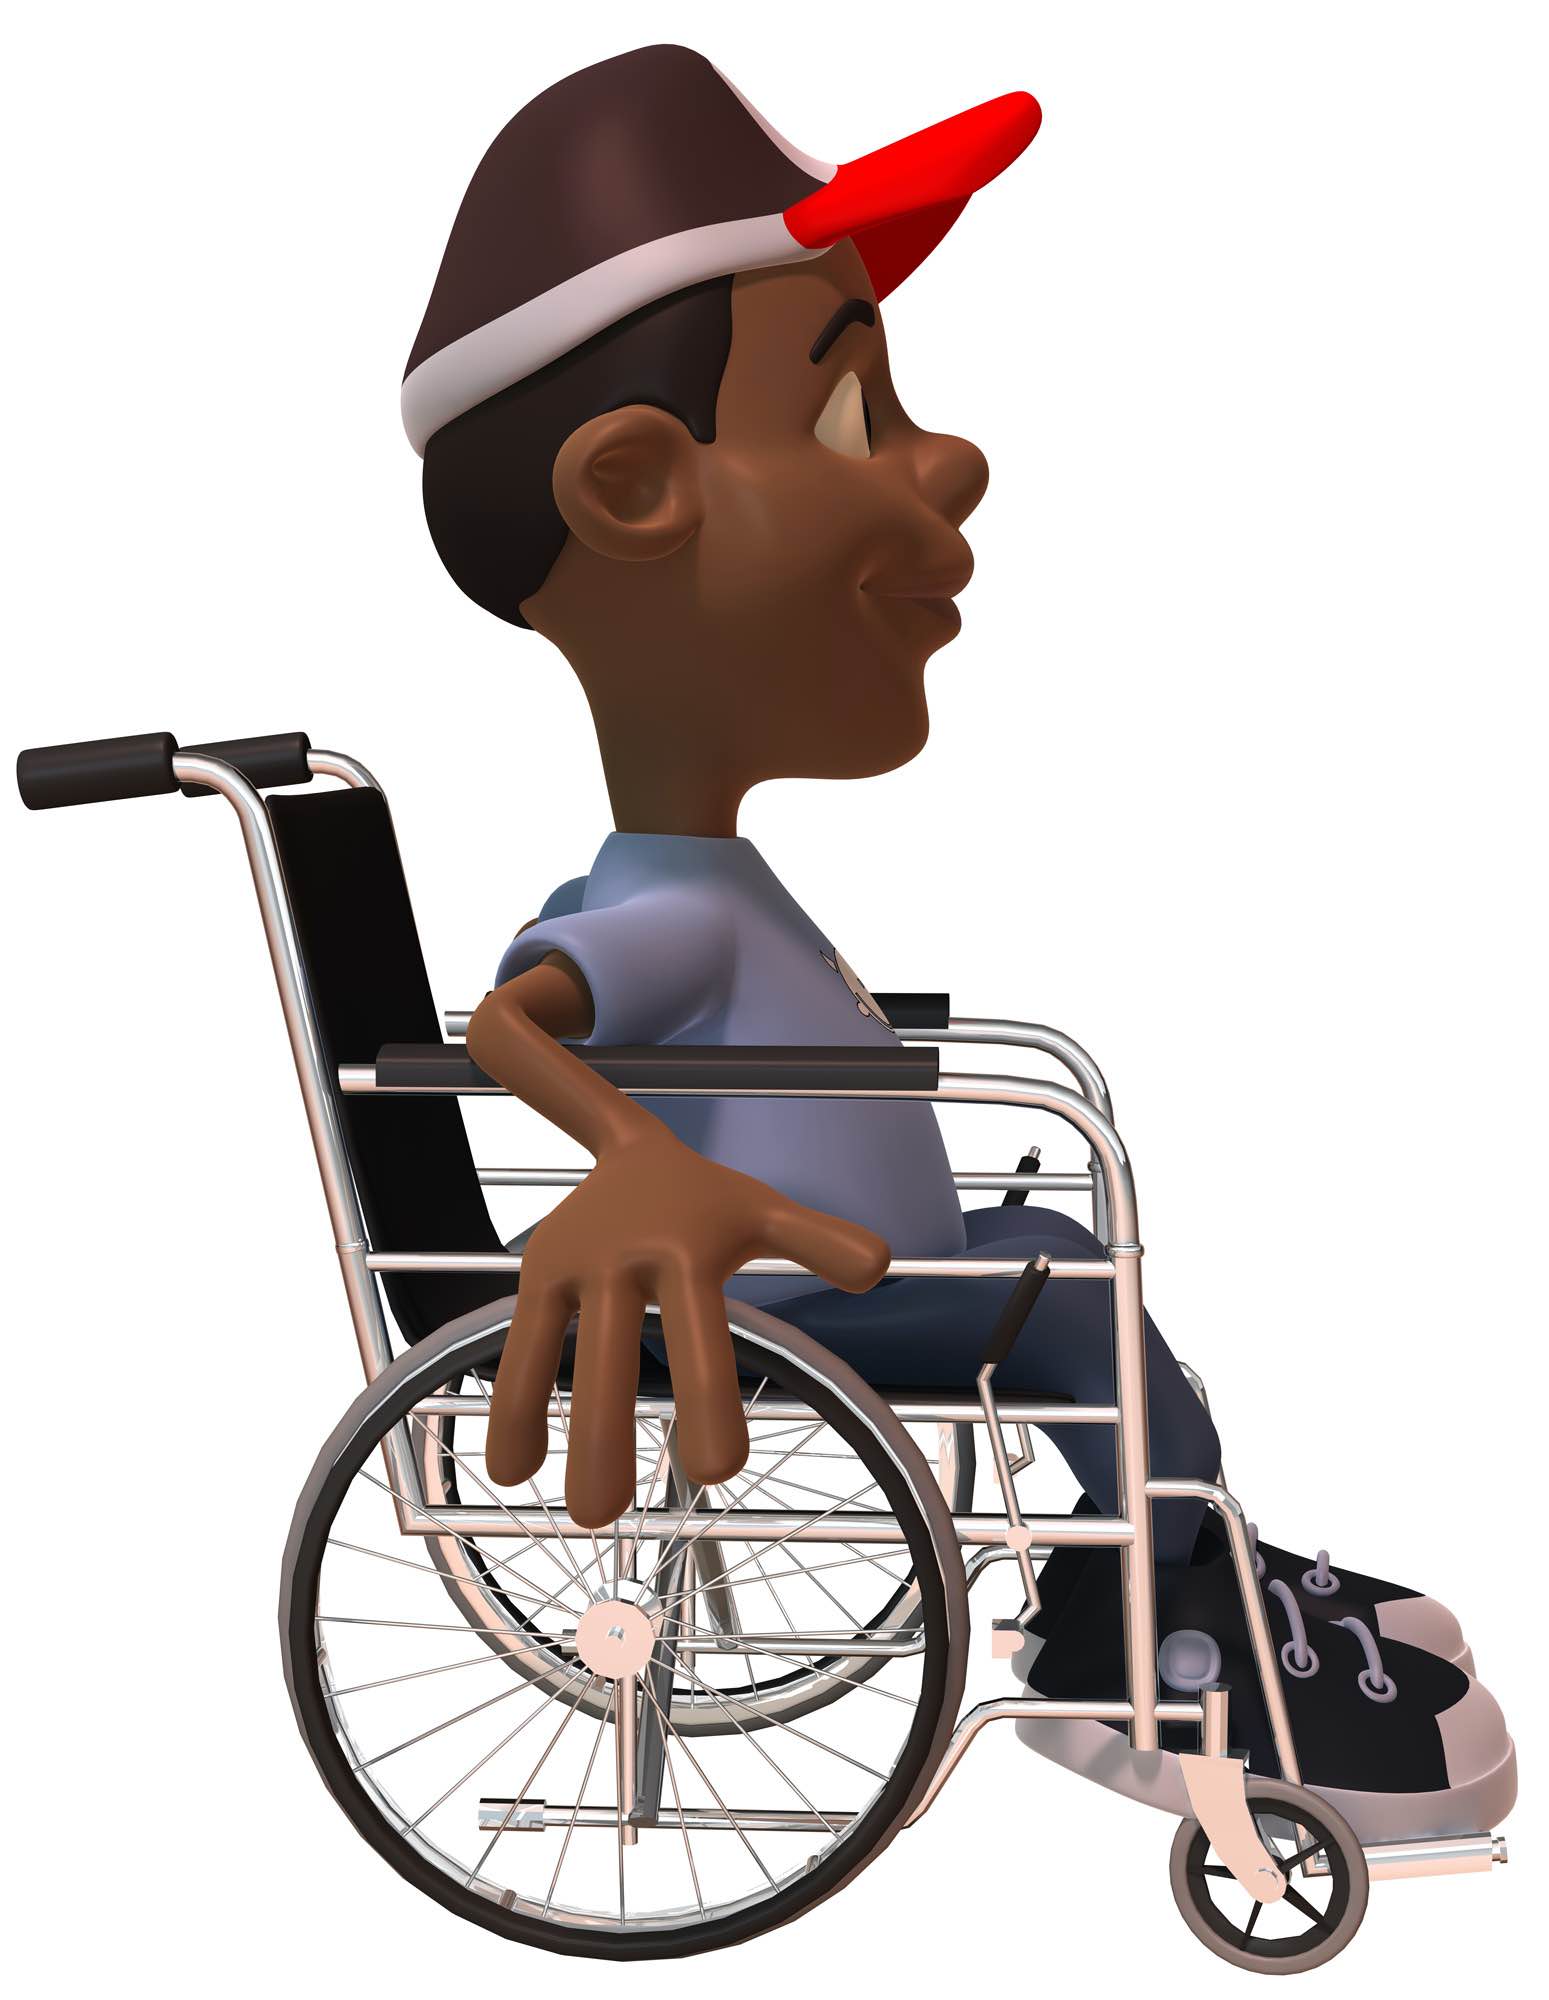 La imagen muestra un niño en silla de ruedas.